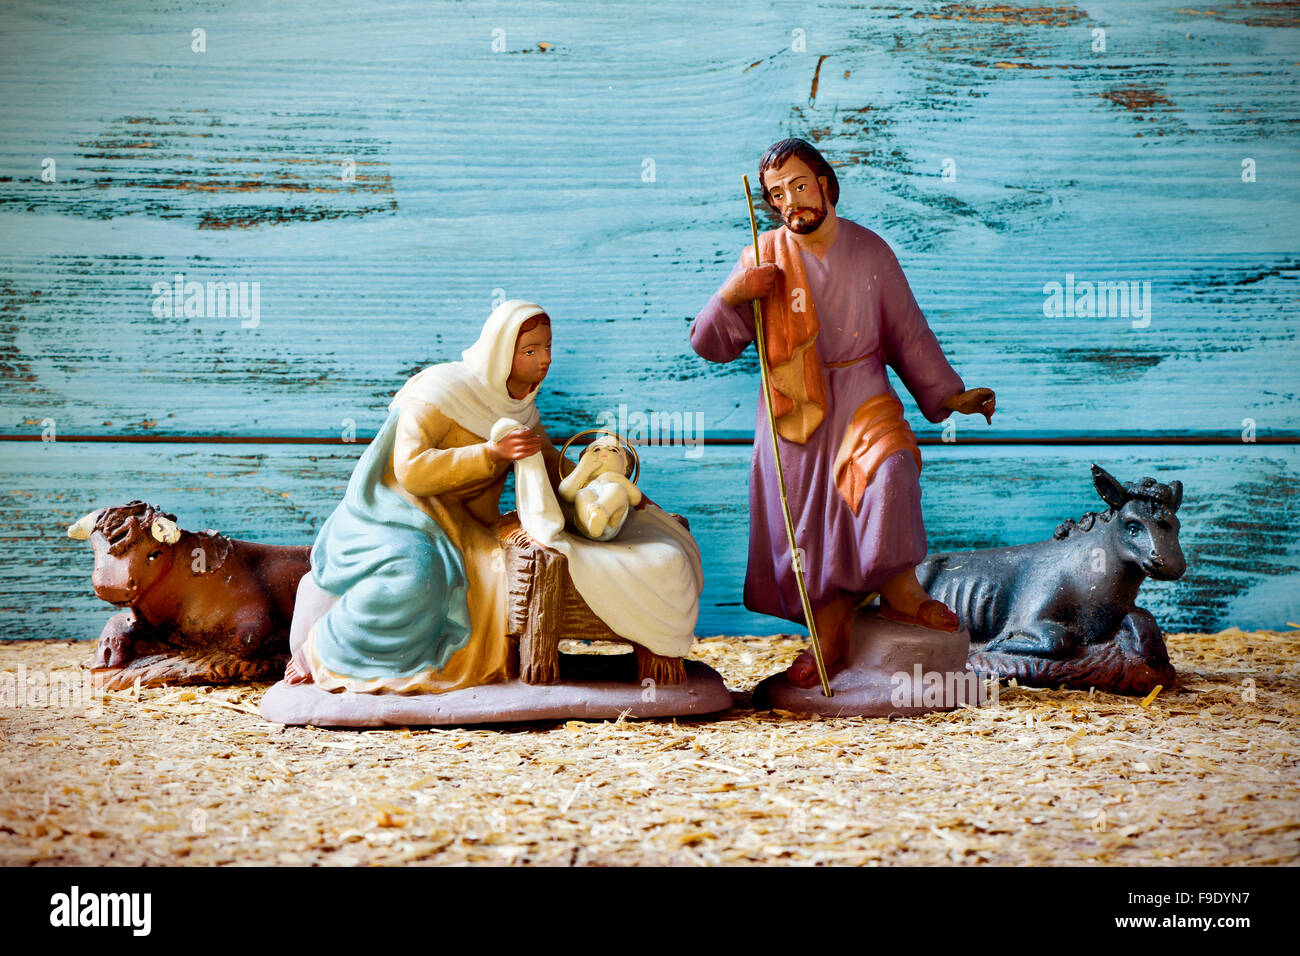 La sainte famille, l'Enfant Jésus, la Vierge Marie et saint Joseph, et l'âne et le bœuf dans une crèche rustique Banque D'Images